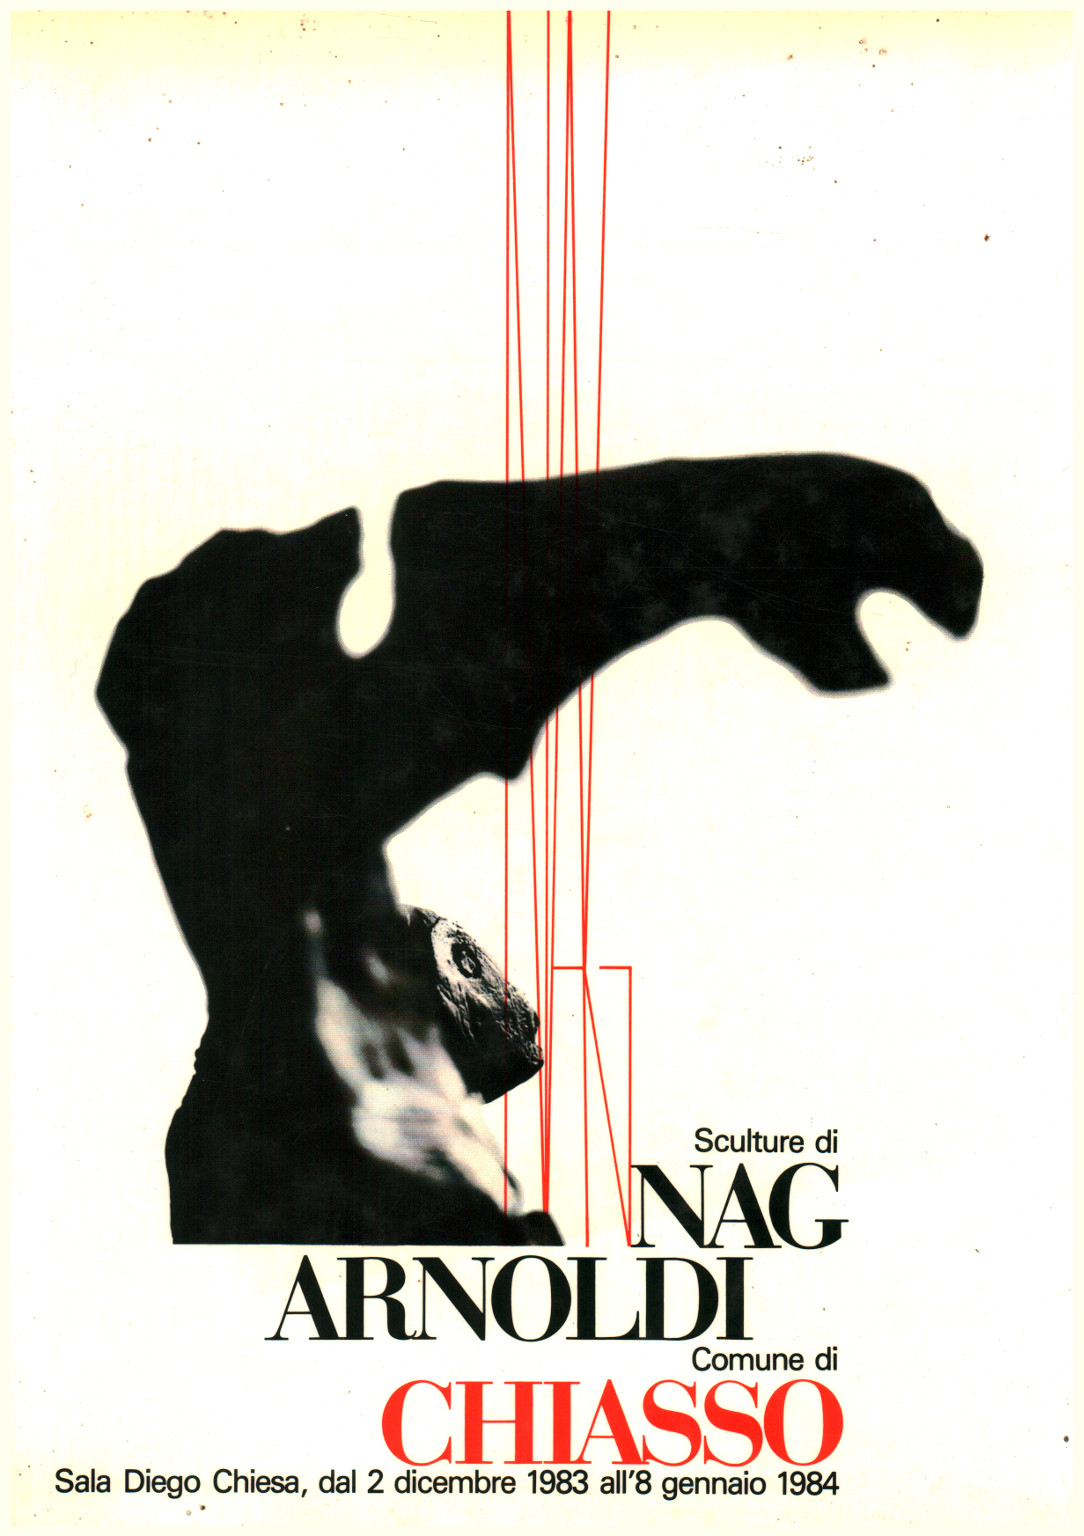 Sculture di Nag Arnoldi, s.a.